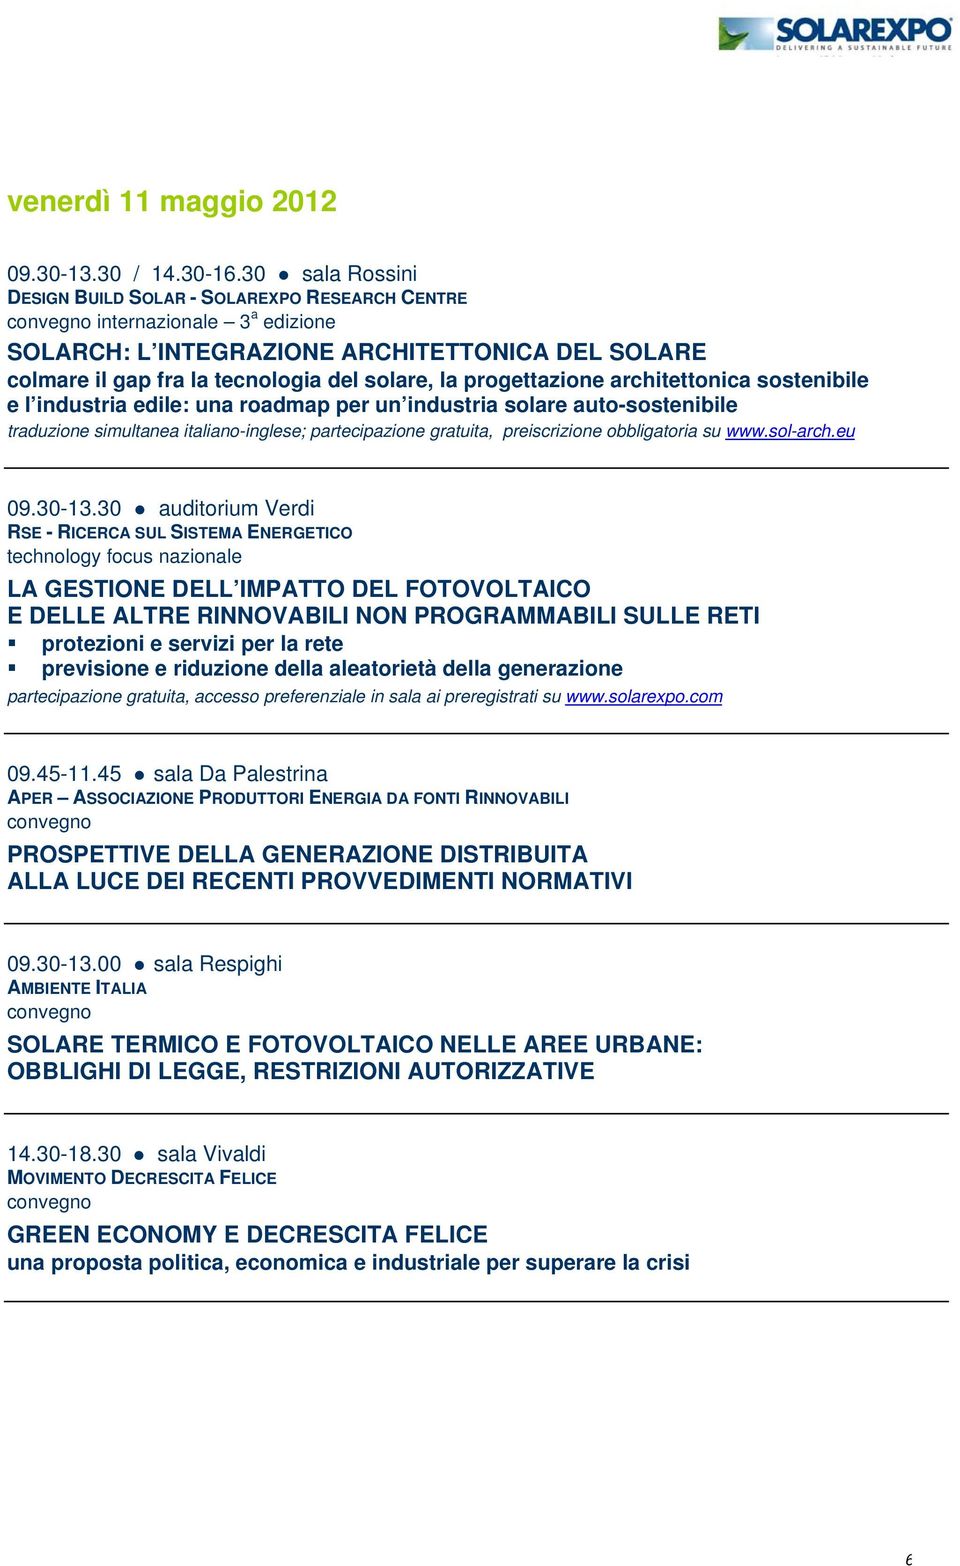 progettazione architettonica sostenibile e l industria edile: una roadmap per un industria solare auto-sostenibile traduzione simultanea italiano-inglese; partecipazione gratuita, preiscrizione